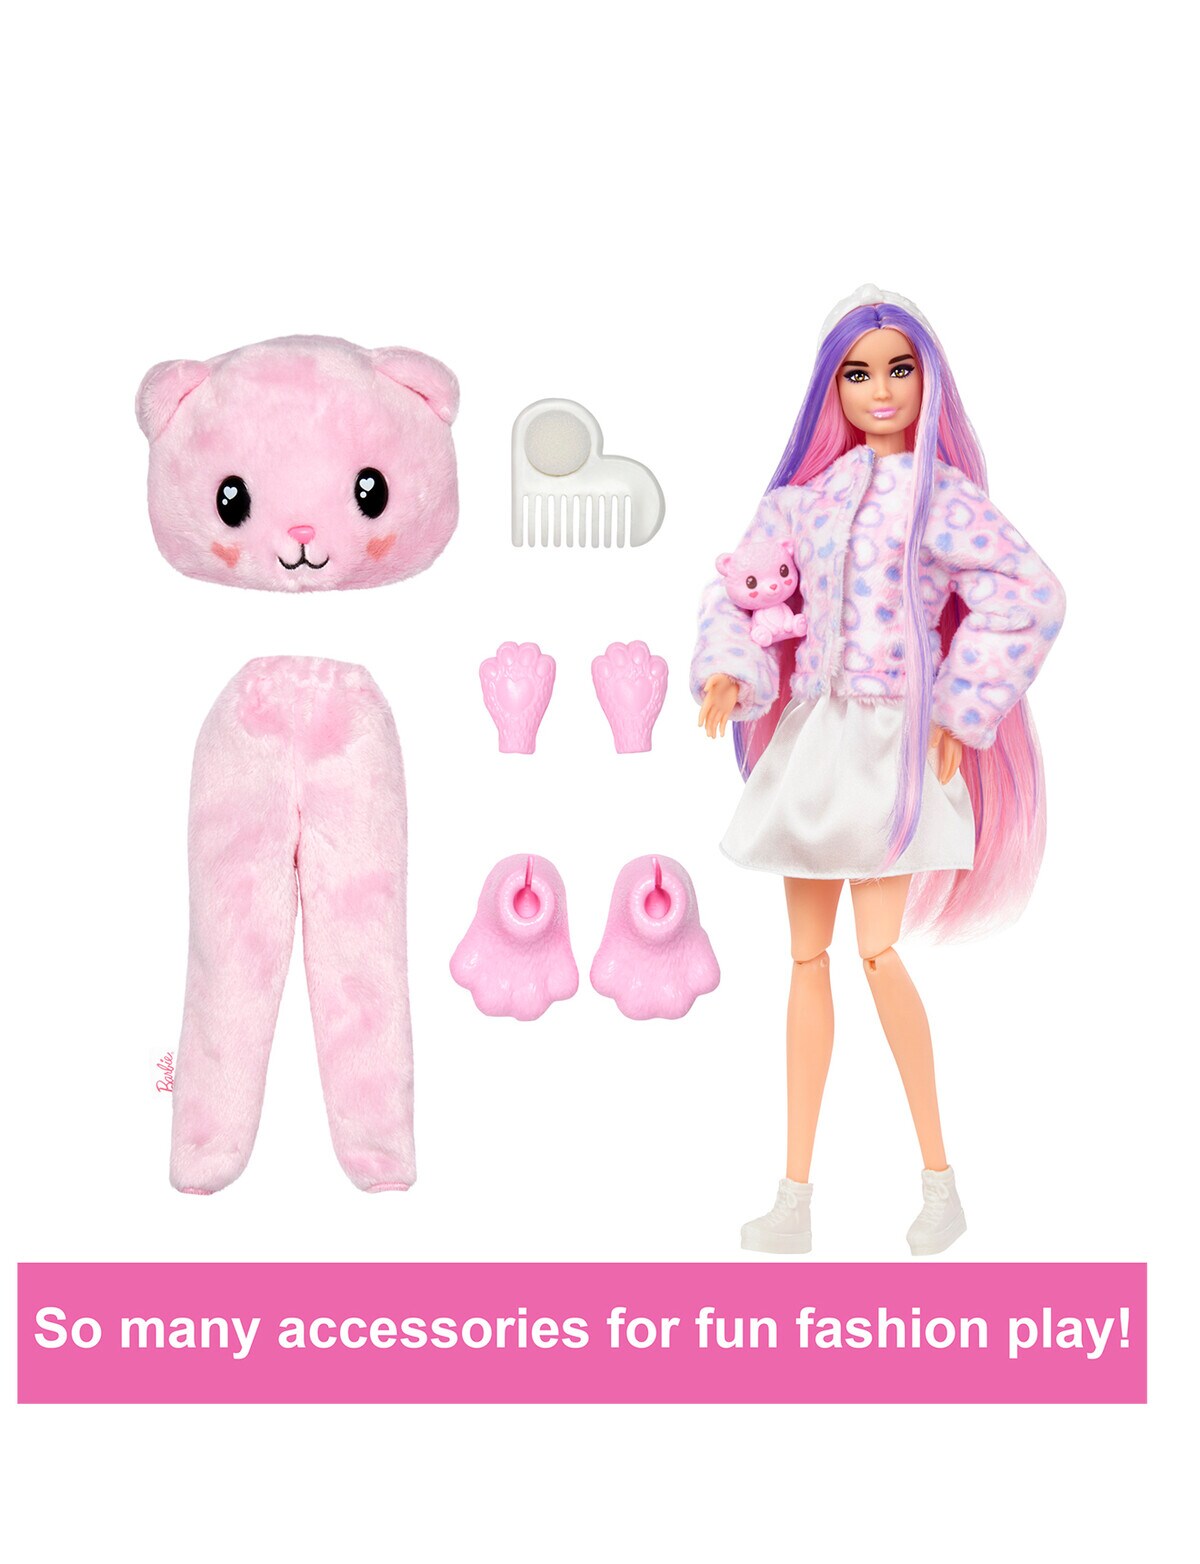 Barbie Cutie Reveal Chelsea Doll & Accessories, Poodle Plush Costume & 6  Surprises Including Color Change, Cozy Cute Tees Series